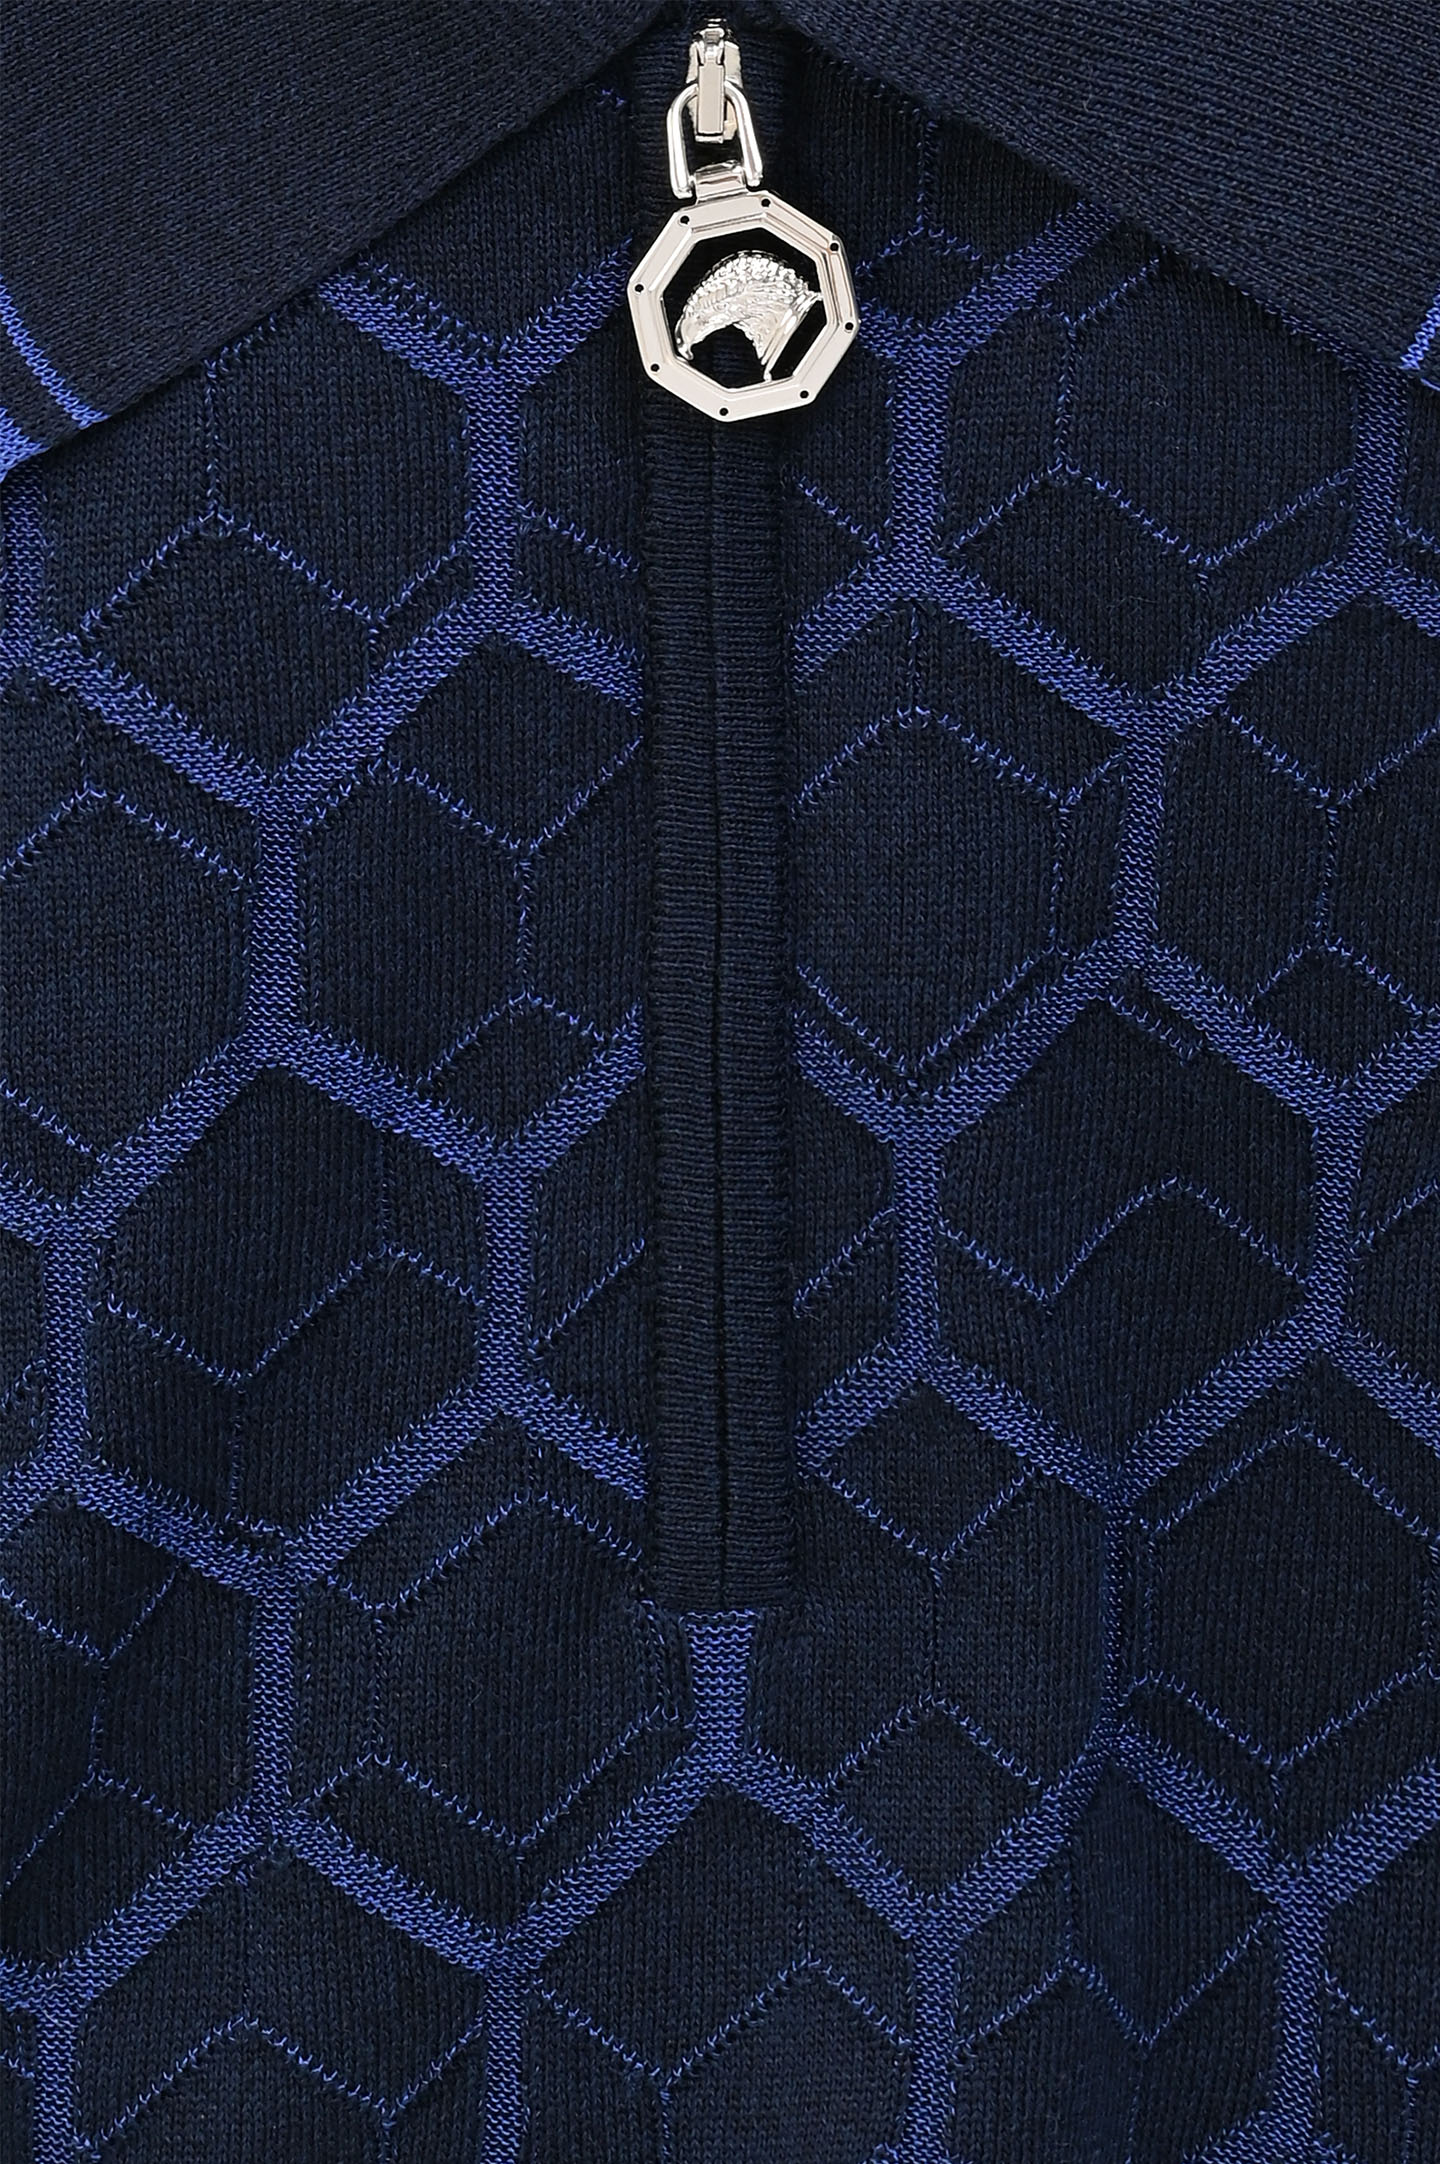 Поло-джемпер из хлопка и шелка с молнией STEFANO RICCI K818068P31 F24173/1, цвет: Темно-синий, Мужской